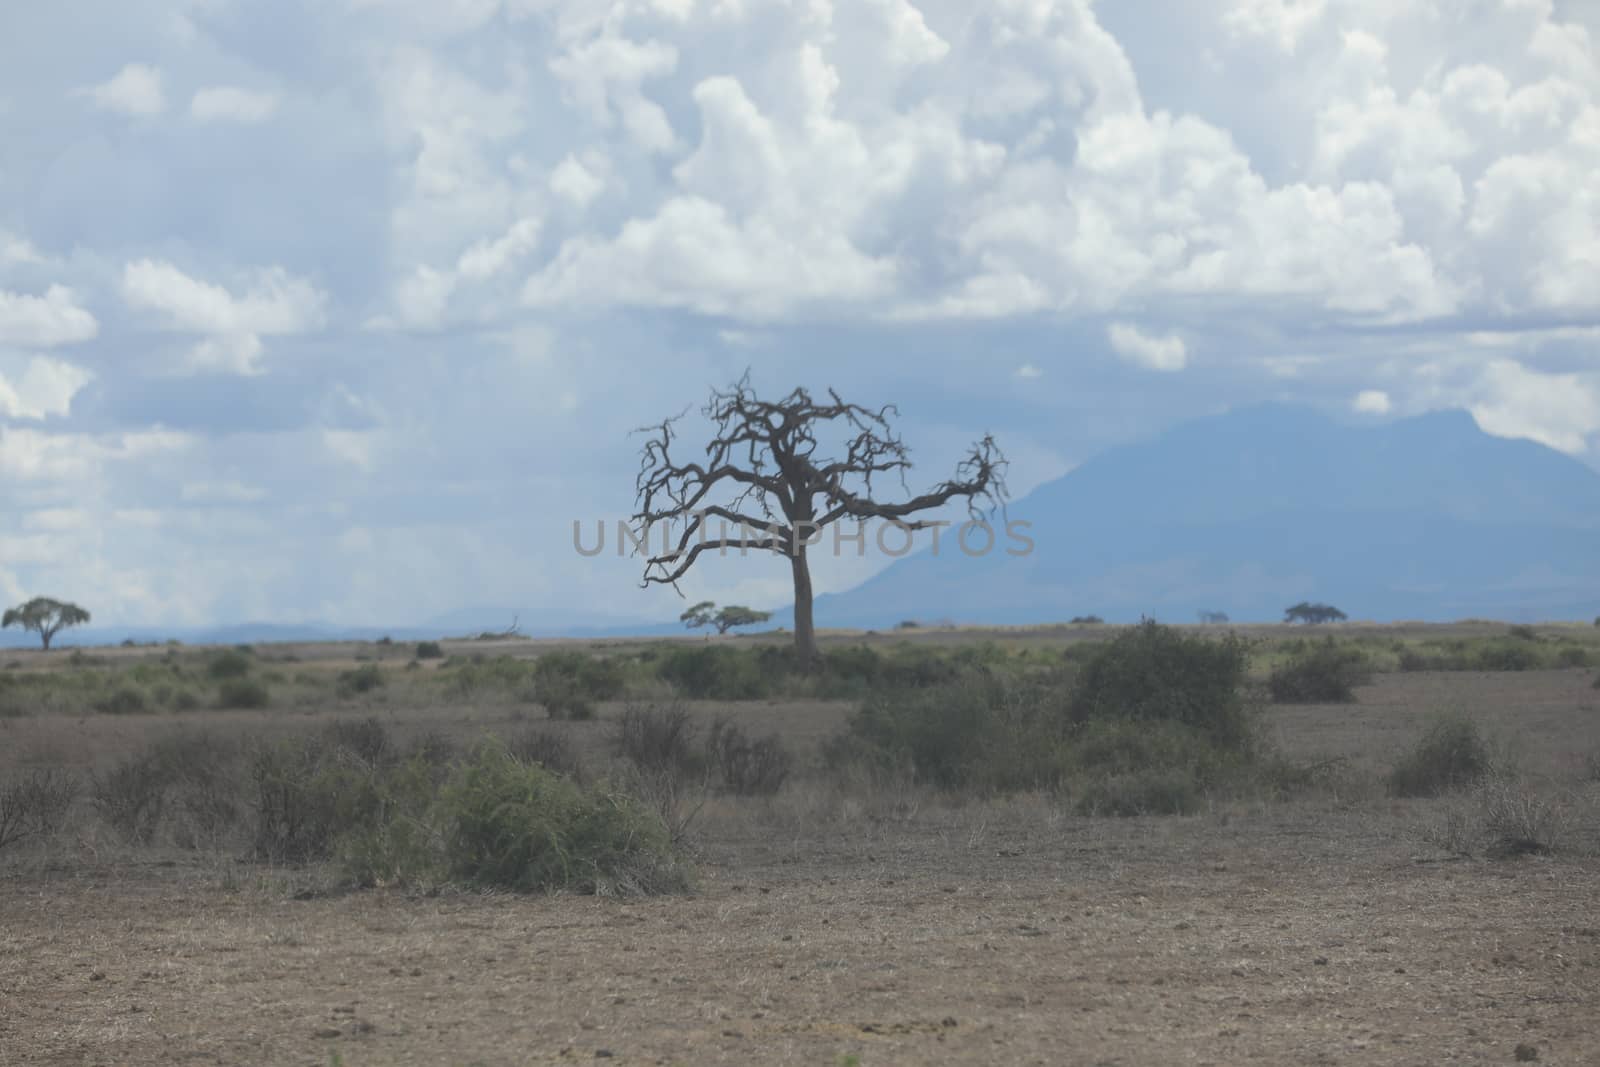 Dry Tree by rajastills